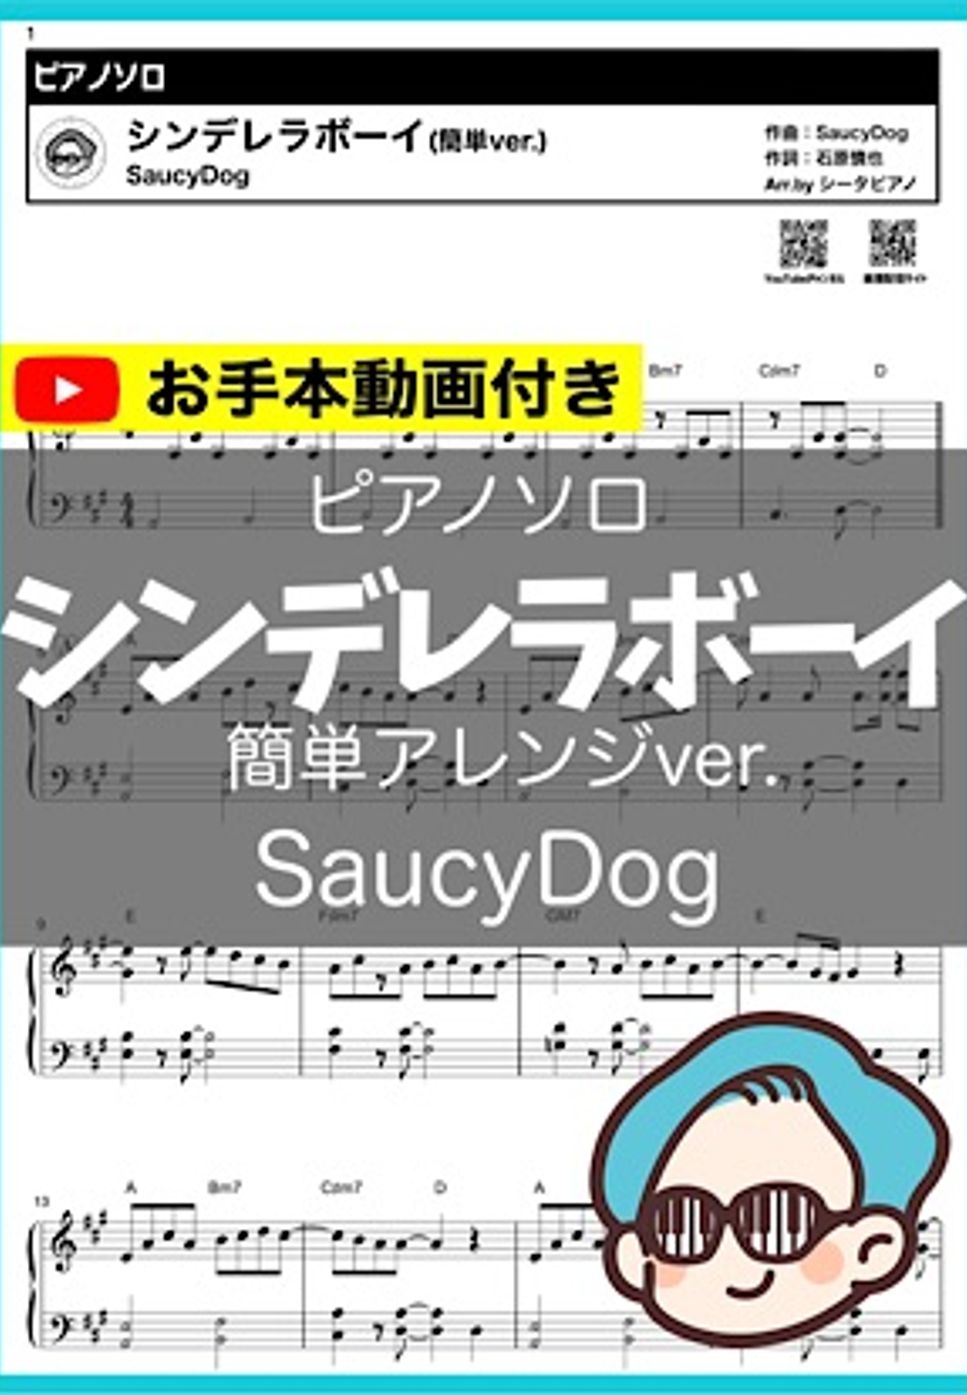 SaucyDog - シンデレラボーイ by シータピアノ